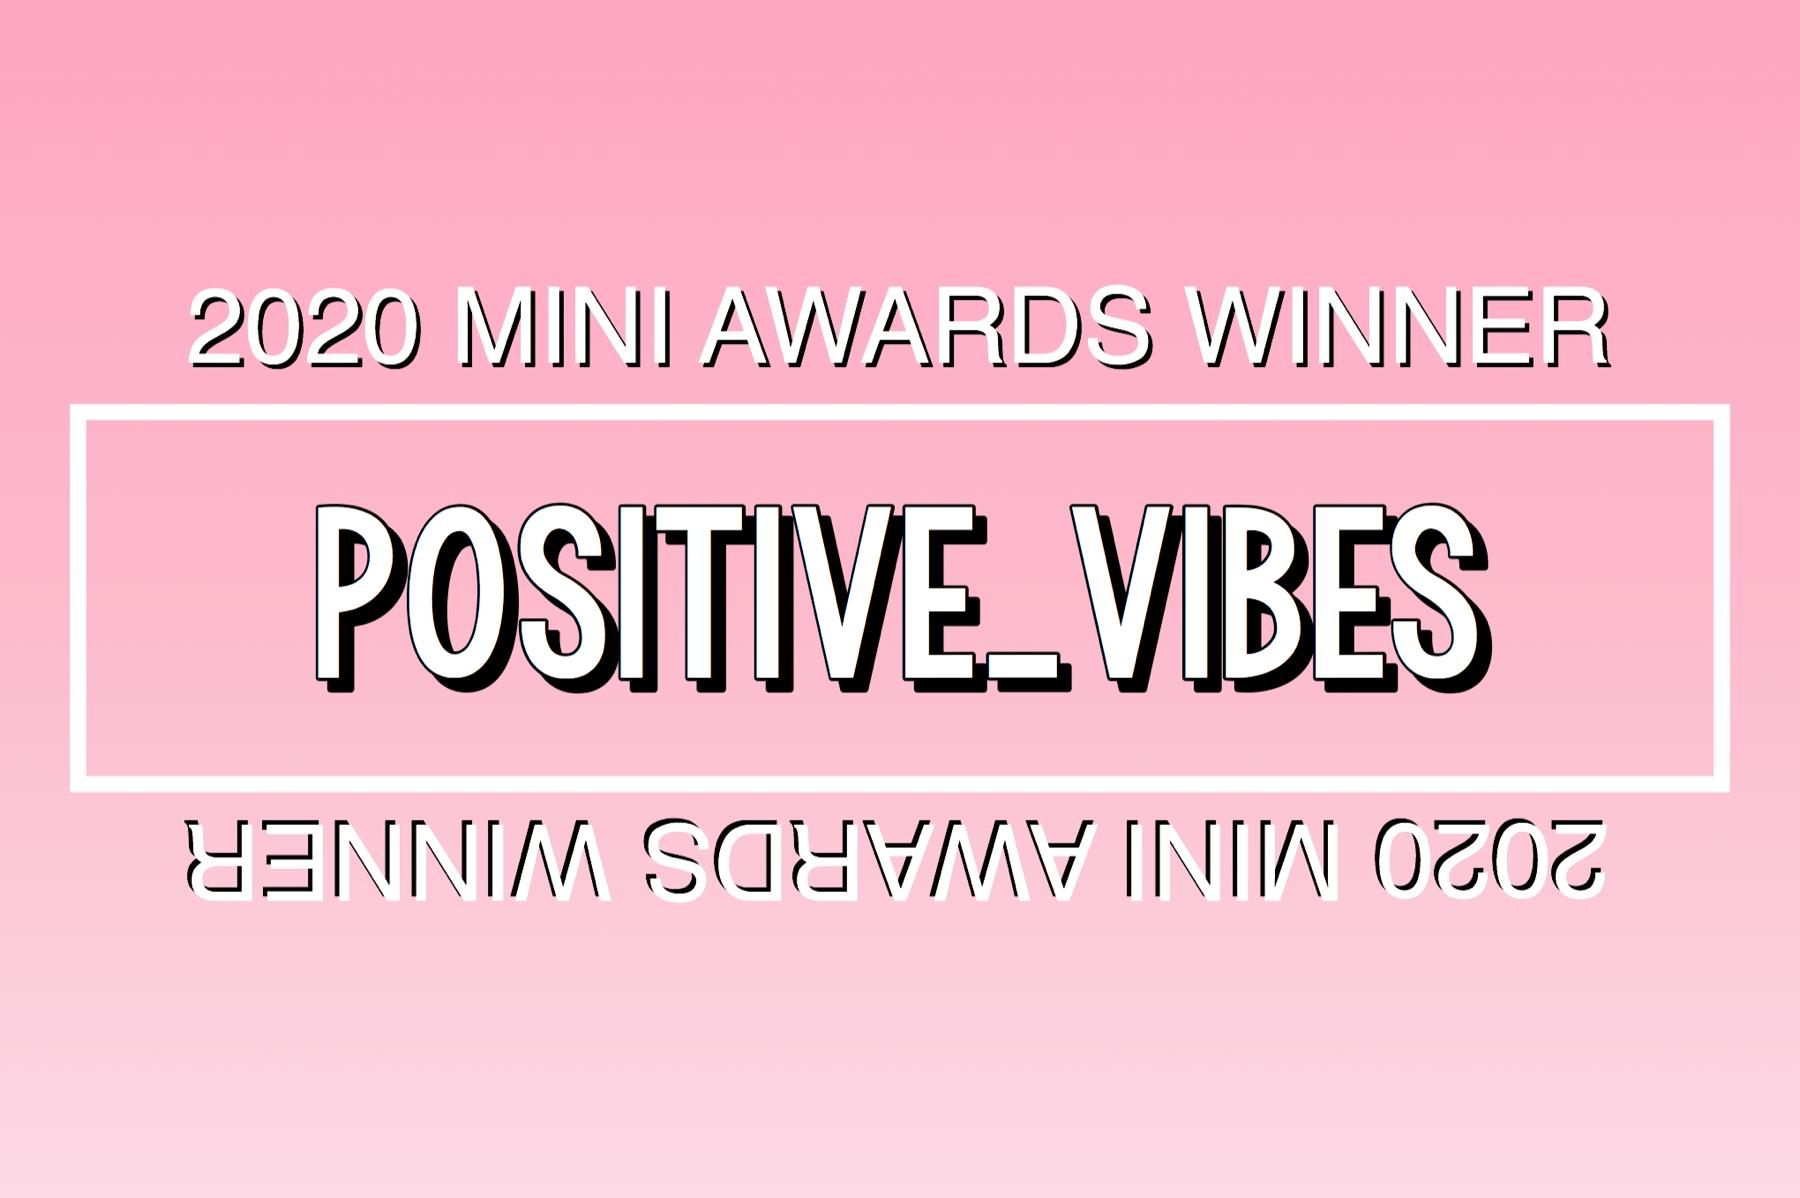 2020 Mini Awards Winner @POS1T1VE_V1BES!